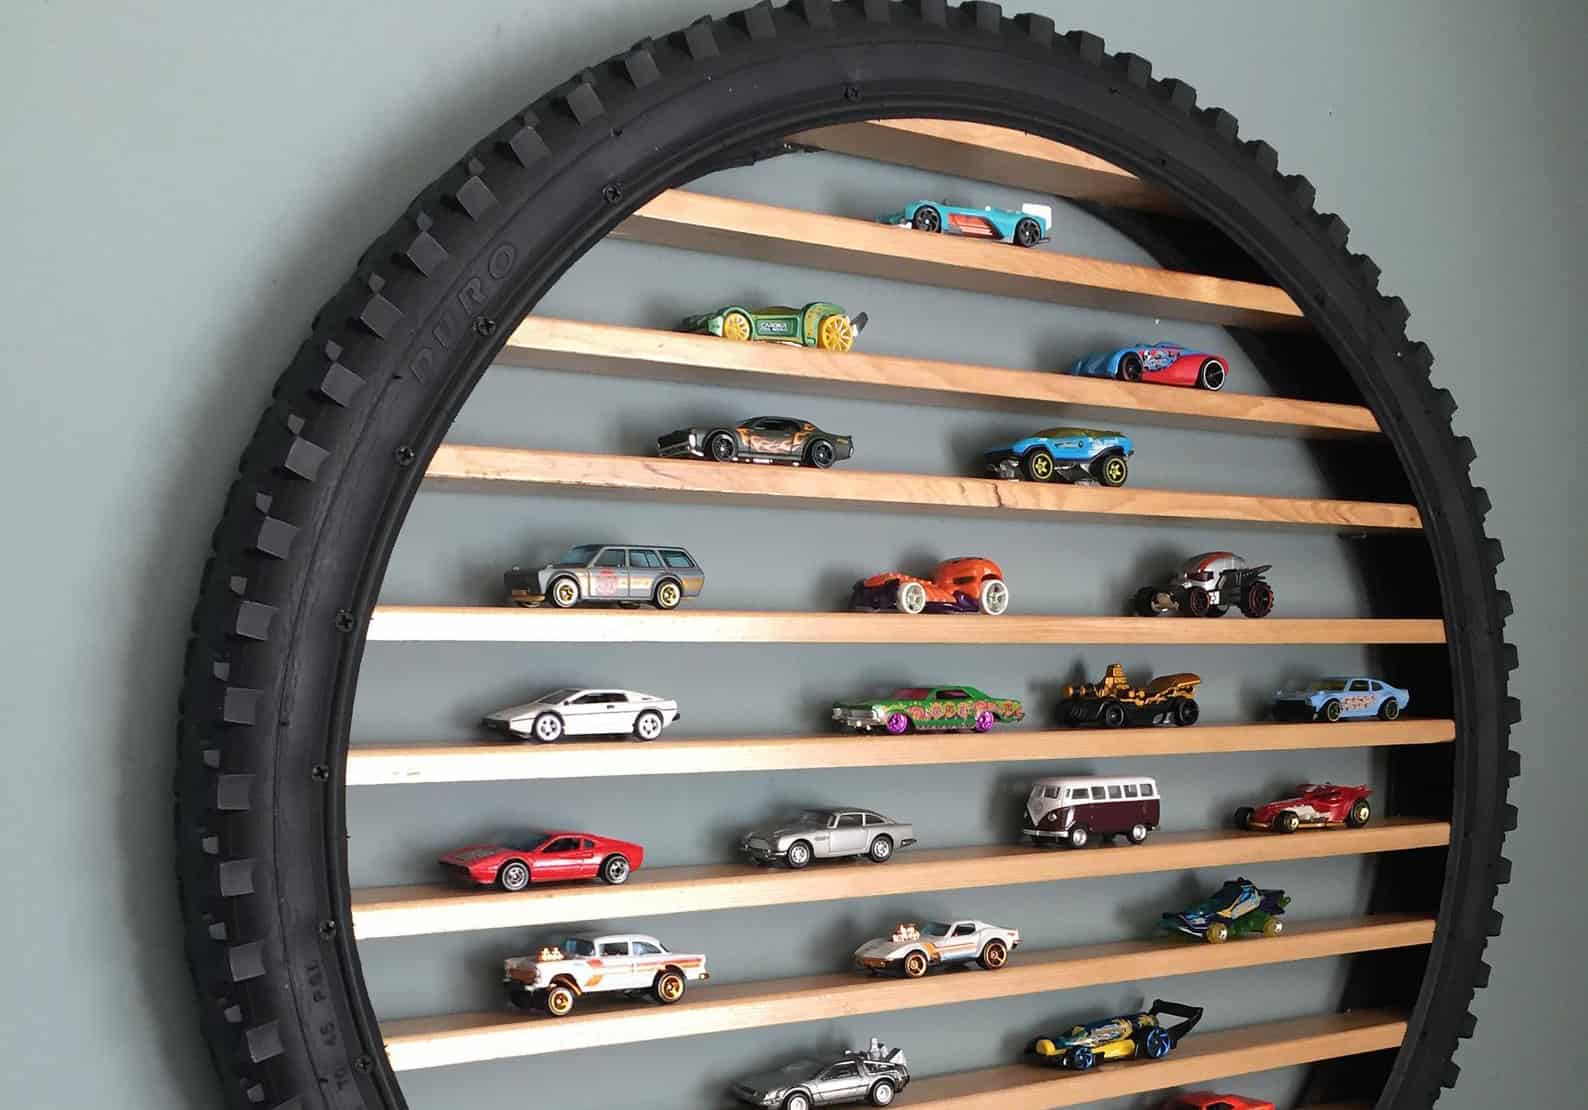 This Hot Wheels Tire Storage Display Is Genius